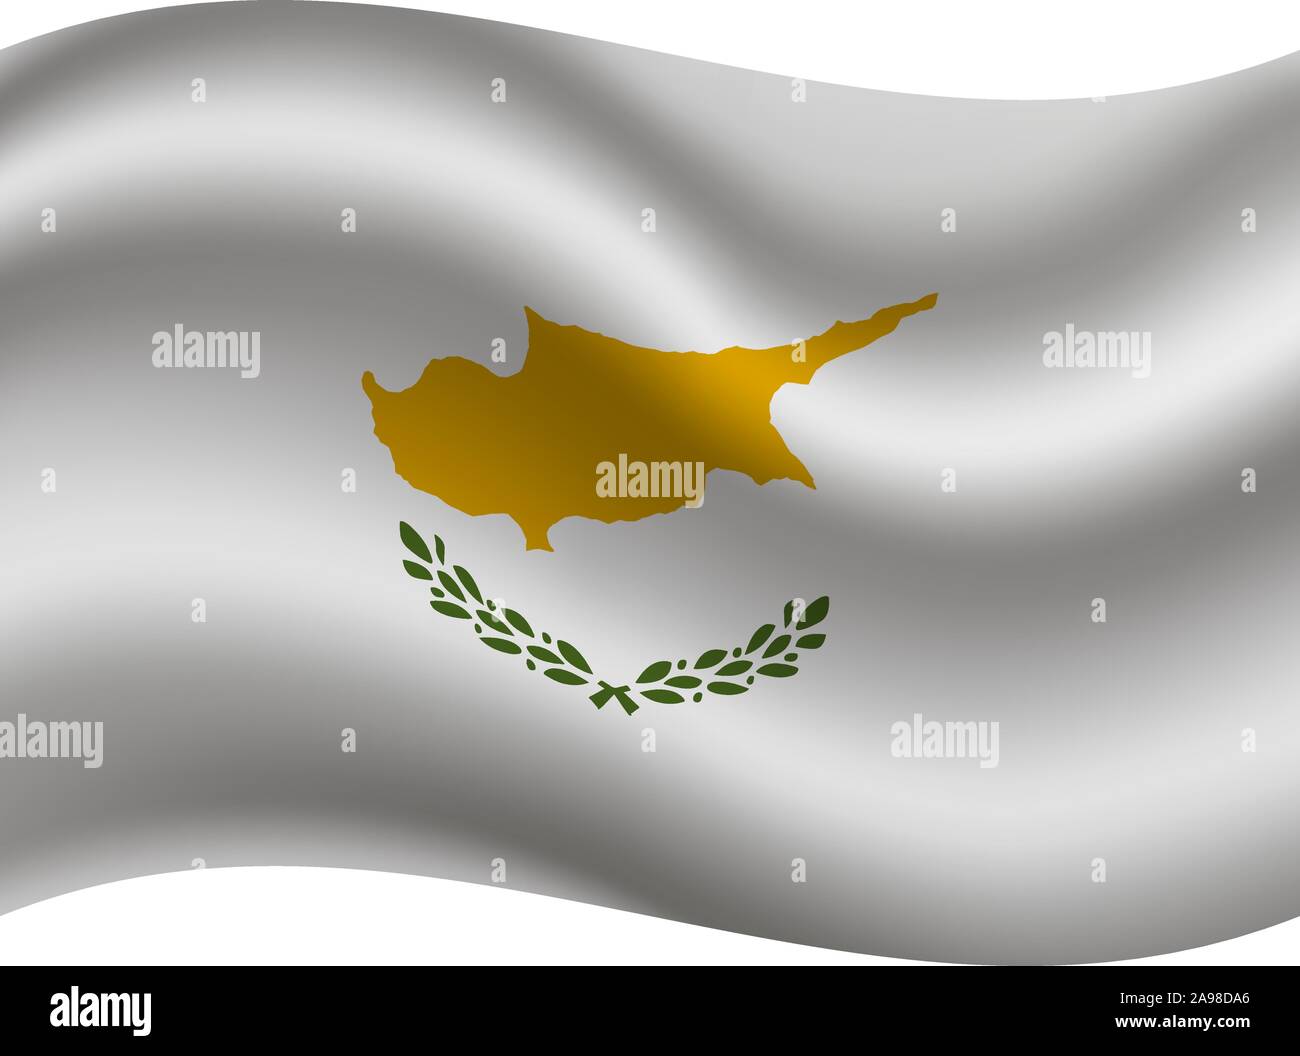 Drapeau national de la République de Chypre. couleurs d'origine et de proportion. Illustration vectorielle, simplement, en provenance de pays. Illustration de Vecteur